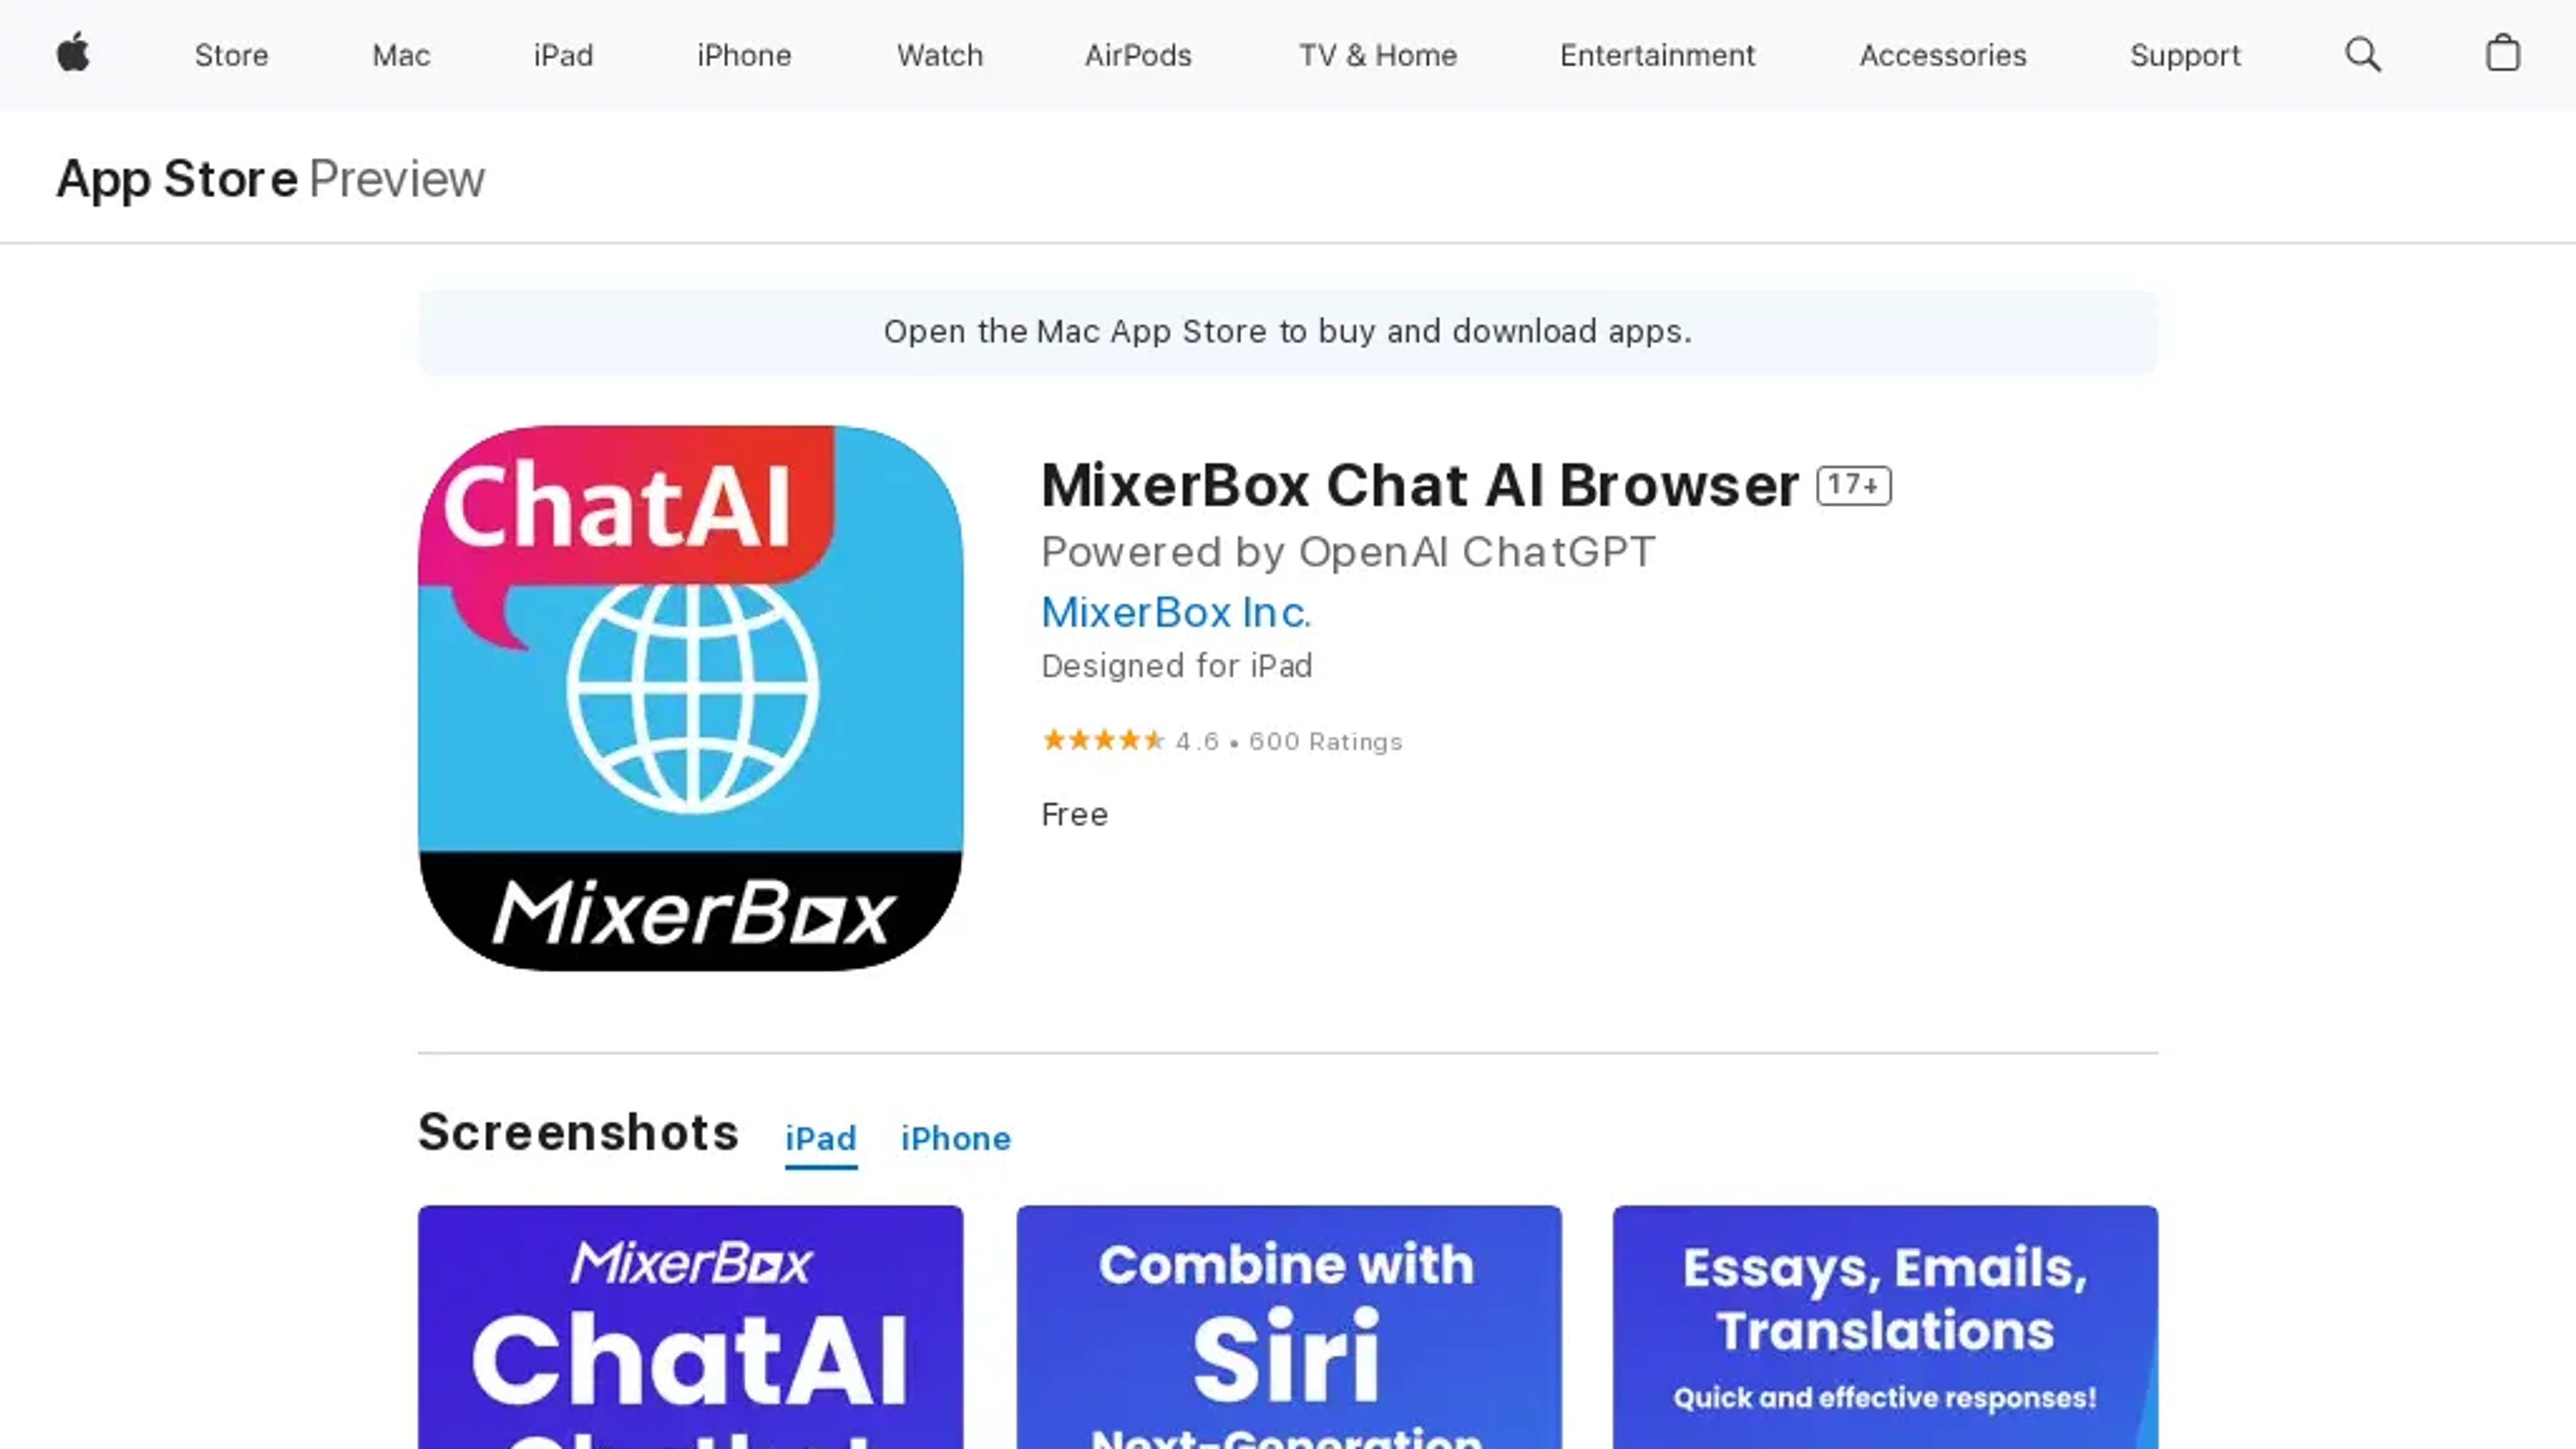 MixerBox Chat AI